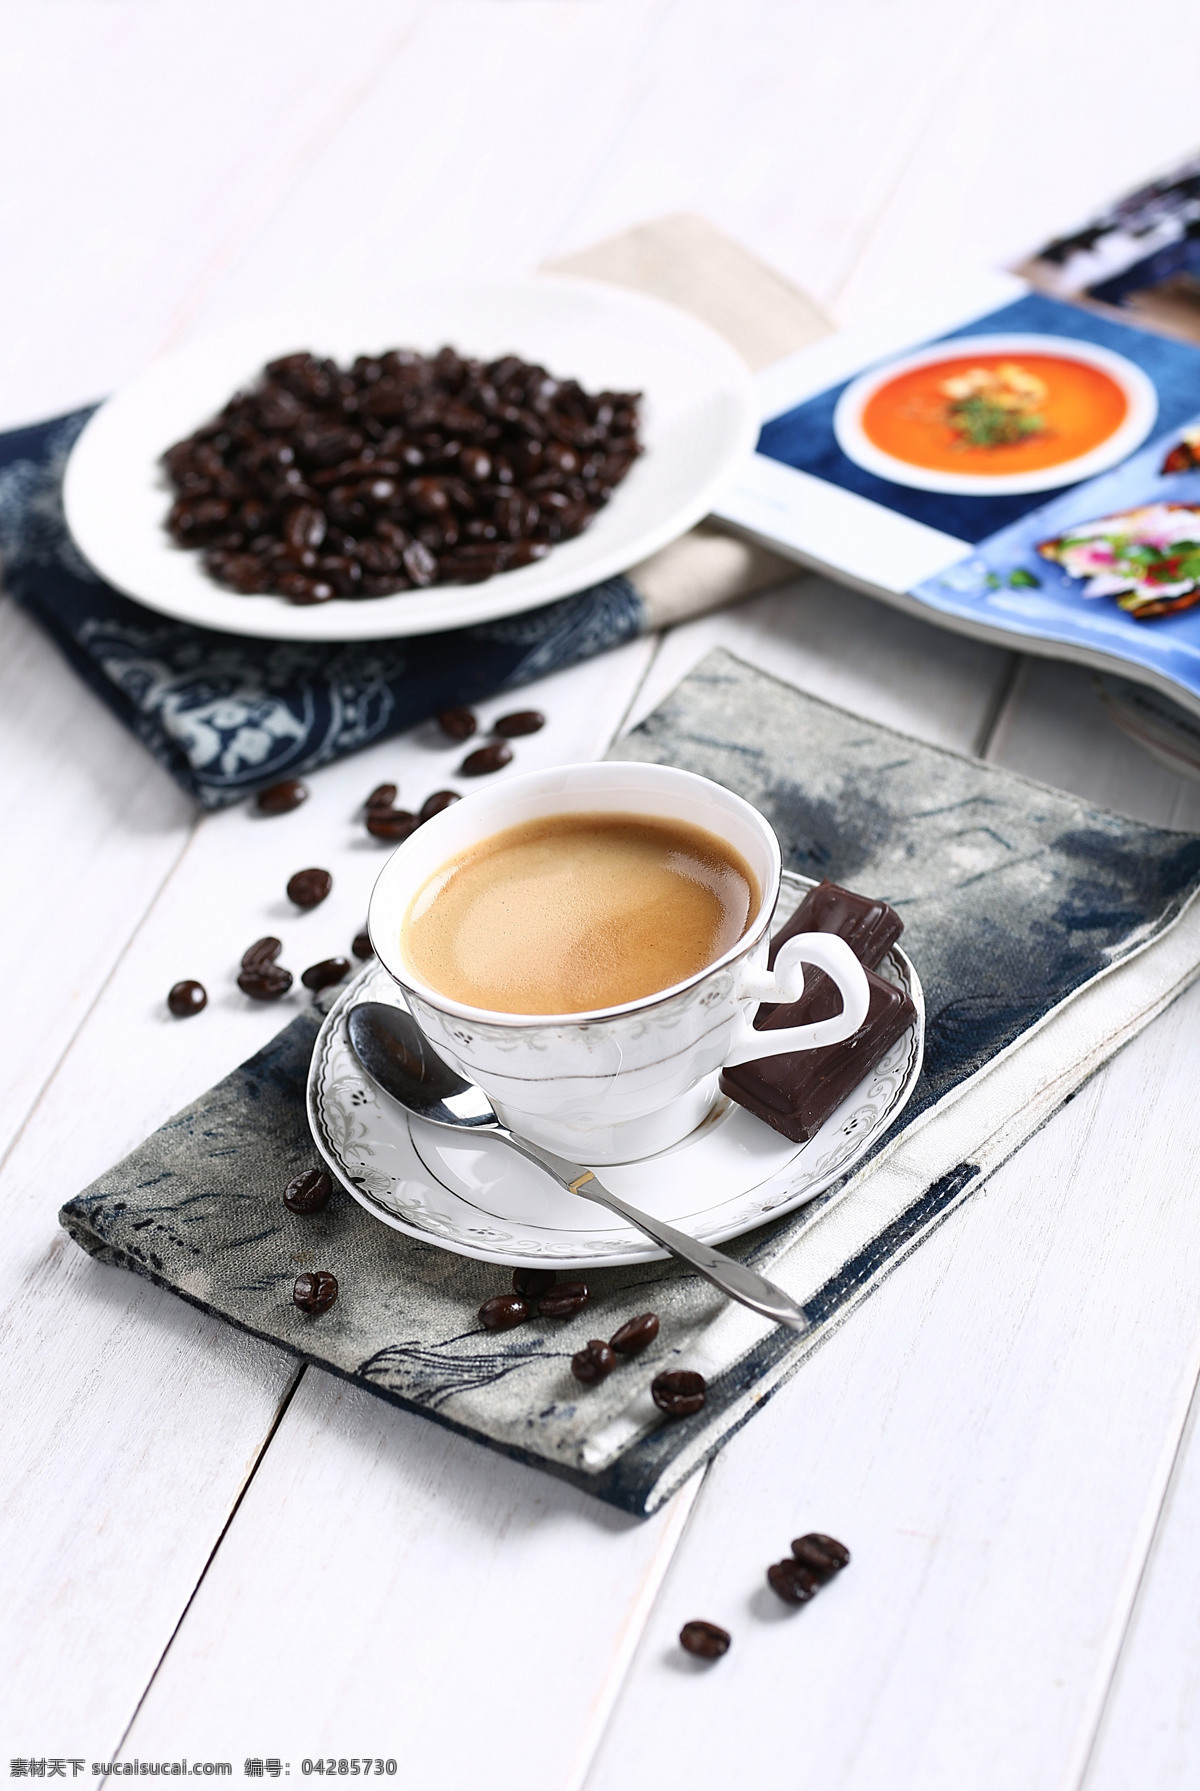 意式浓缩咖啡 咖啡 浓缩咖啡 咖啡豆 咖啡餐具 饮料酒水 餐饮美食